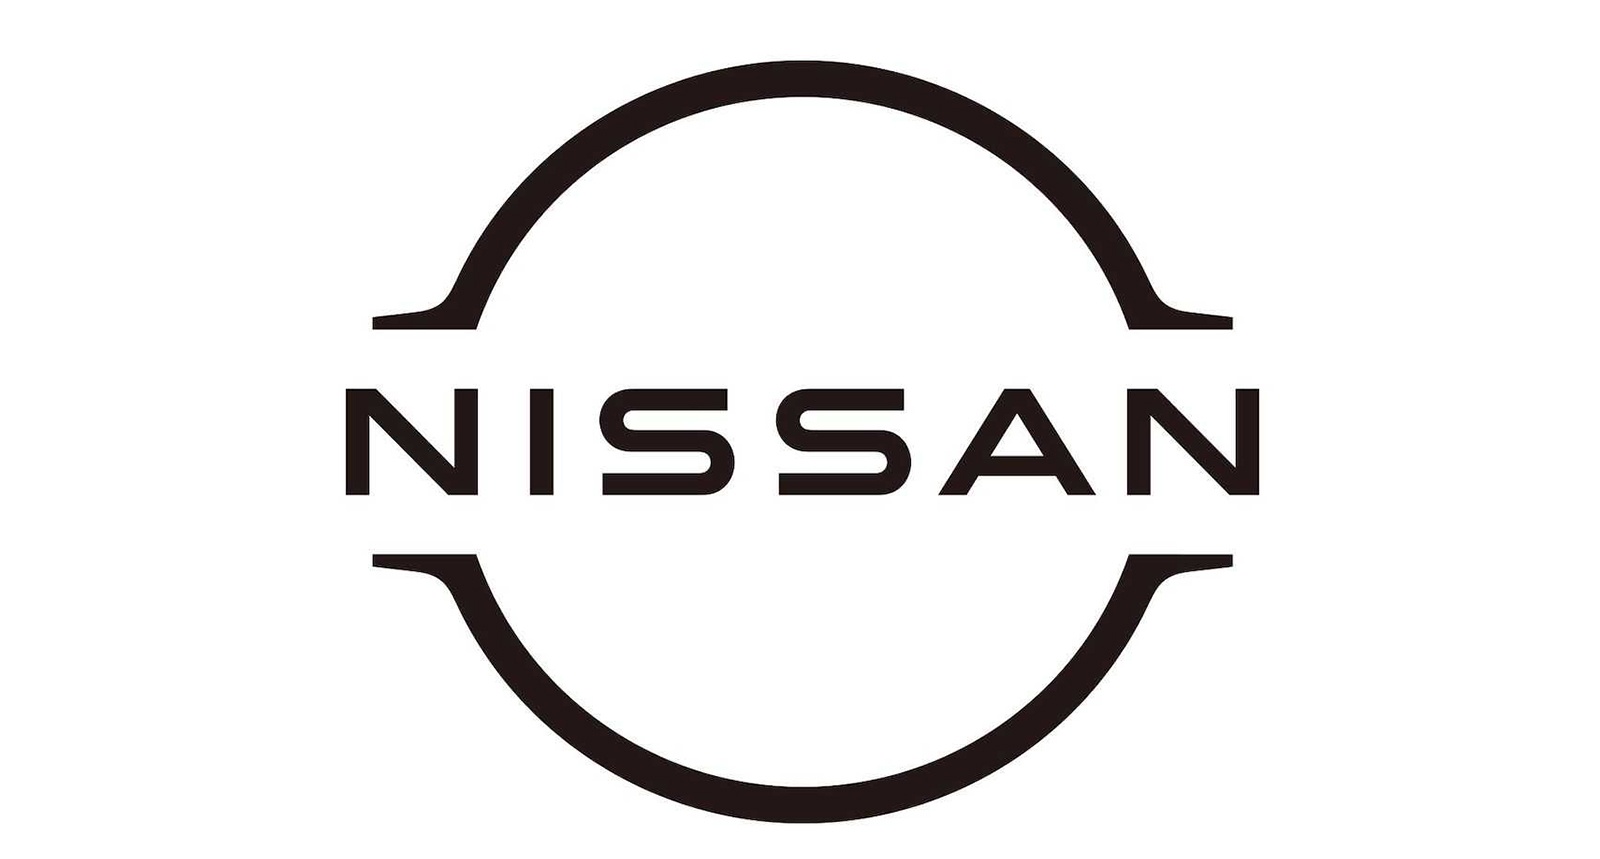 Nissan เผยโลโก้ใหม่ สไตล์ Mininal